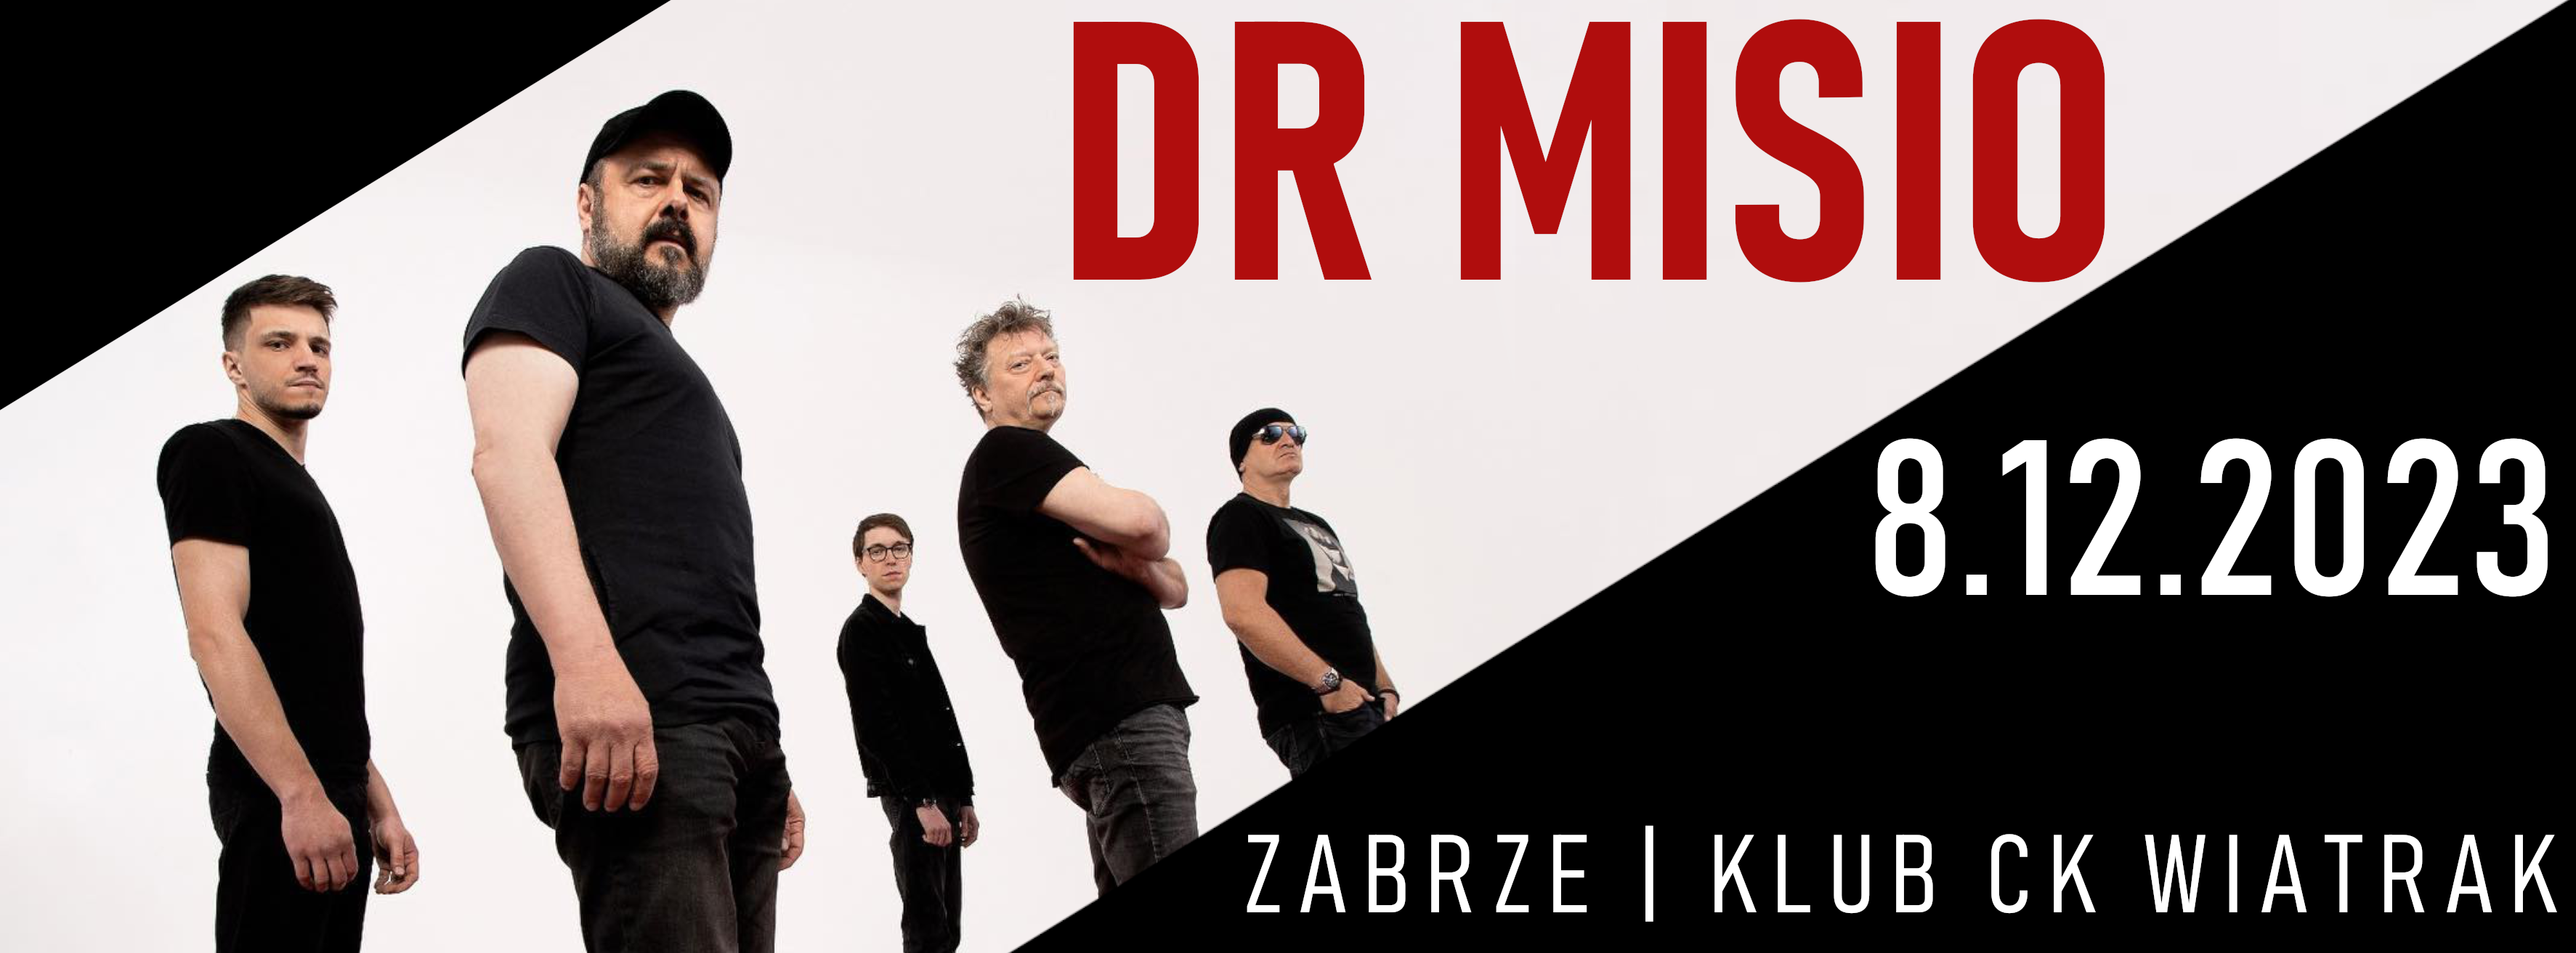 DR MISIO - 8.12.2023